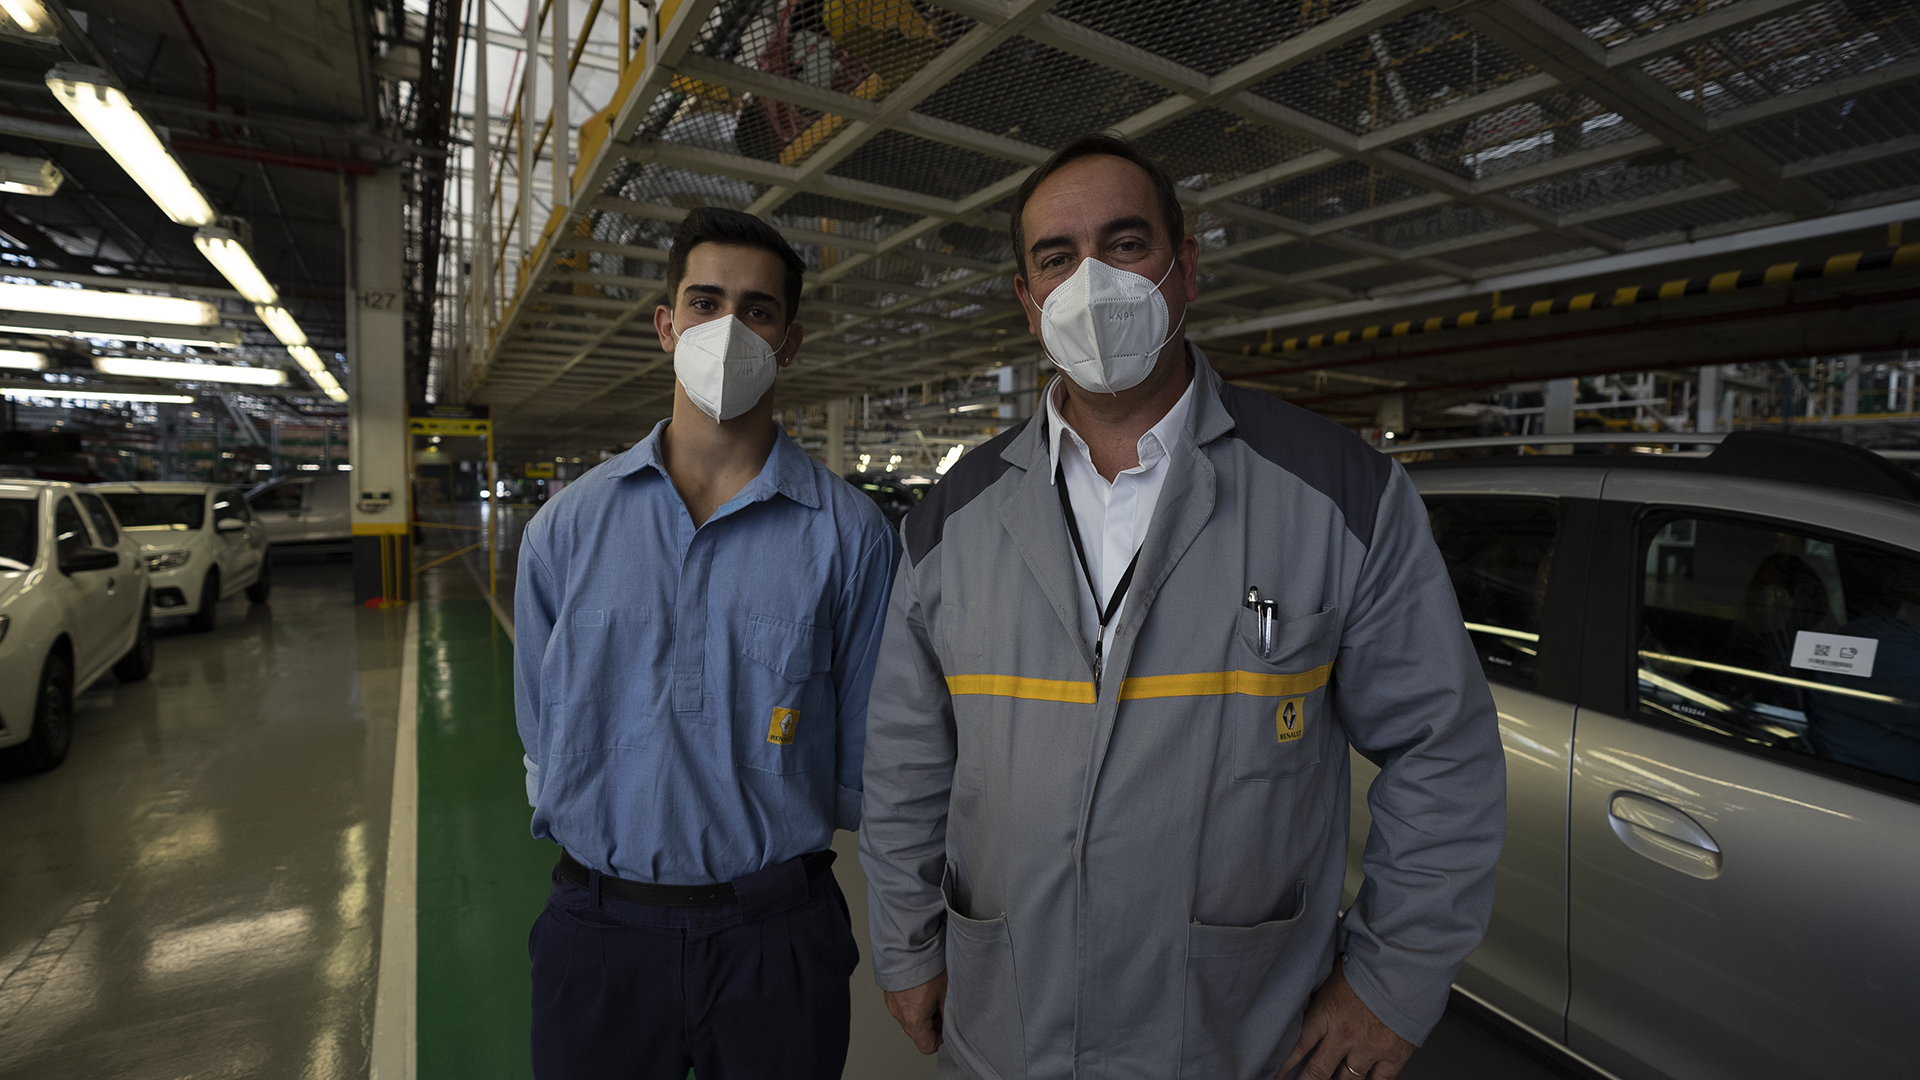 Marco e Ignacio Ranzuglia, padre e hijo trabajan en la planta. Marco hace treinta años, Ignacio hace apenas seis meses